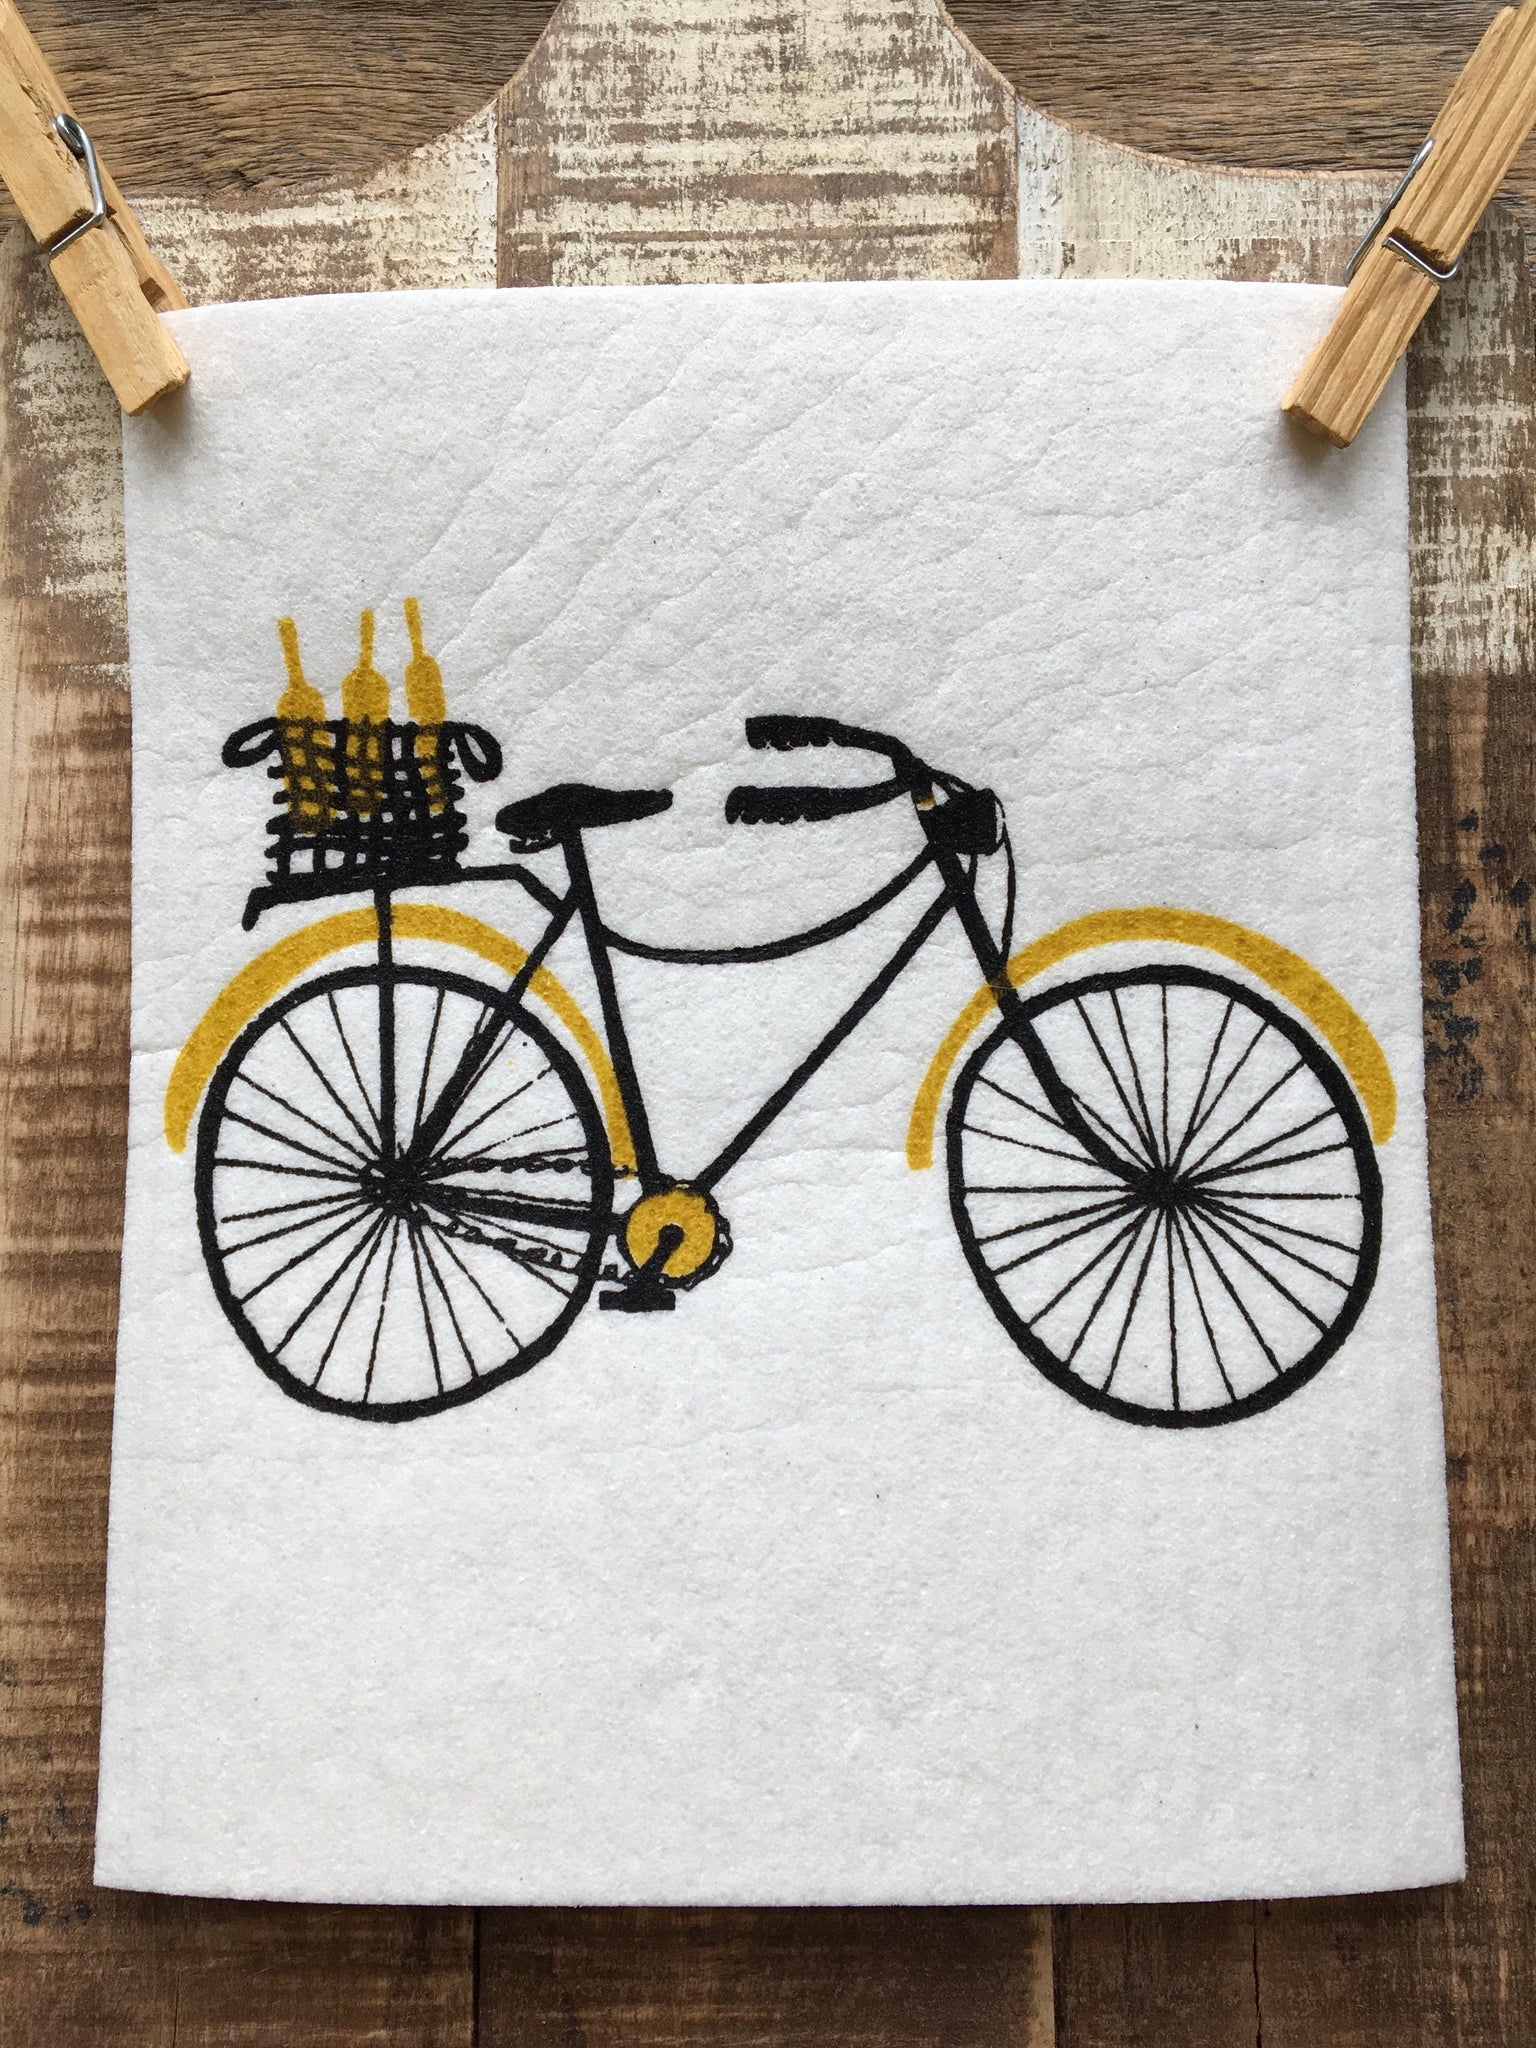 Swedish Dishcloth, Bicicletta